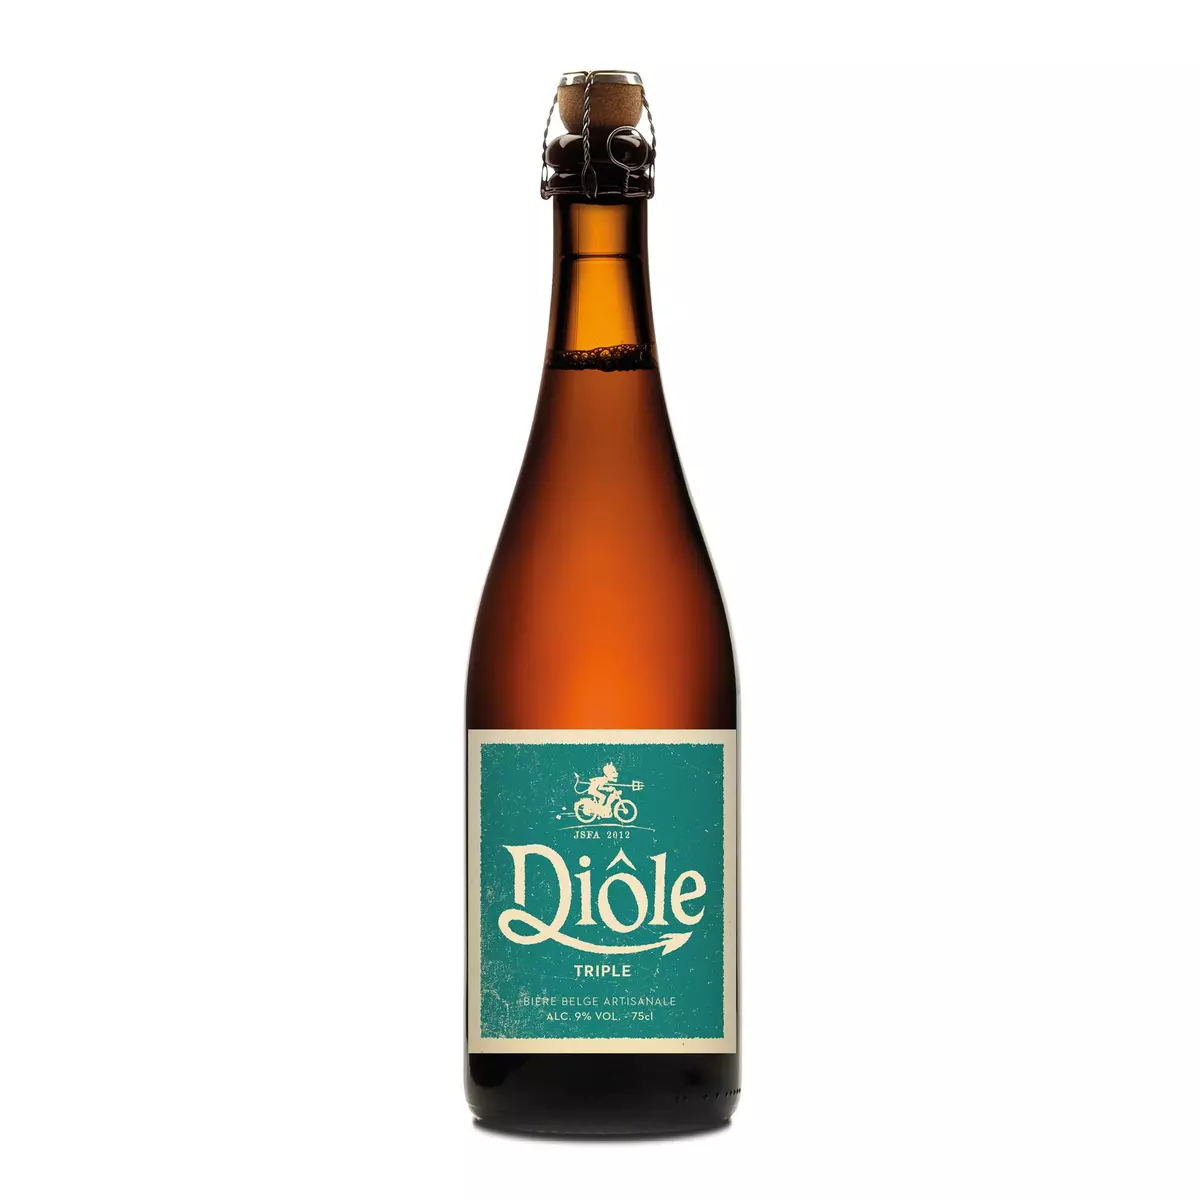 DIOLE Bière belge artisanale 9% 75cl